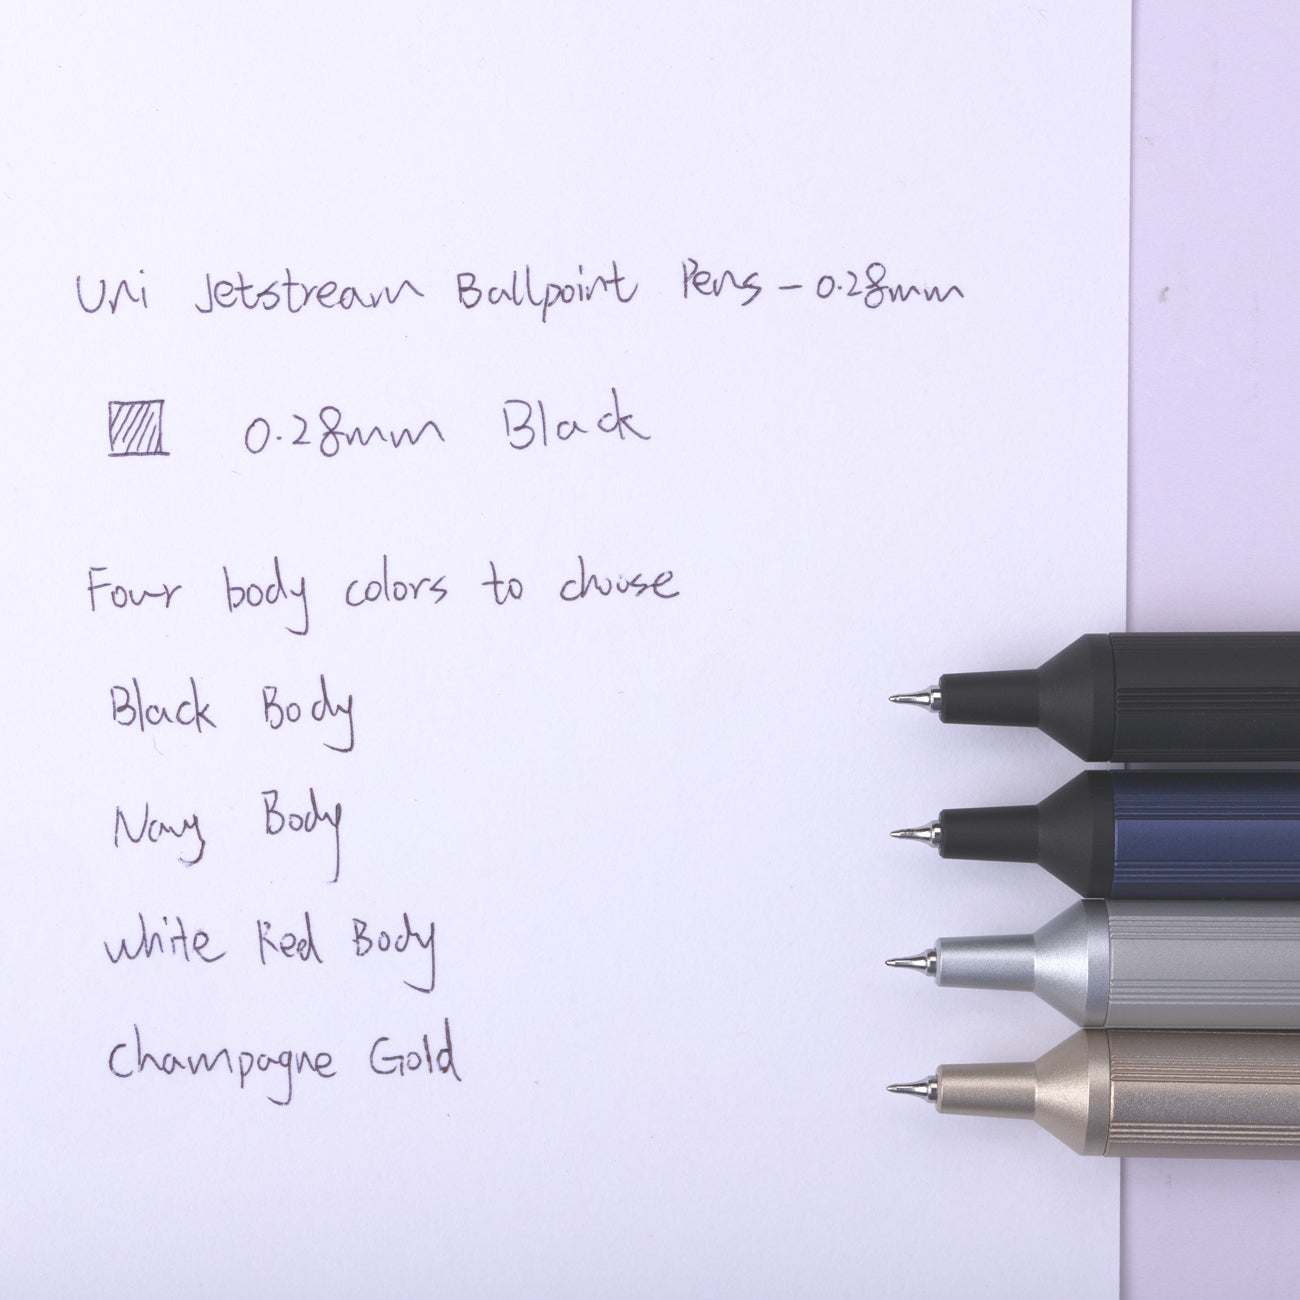 Uni Jetstream Edge Ballpoint Pen - 0.28 mm - Black Body